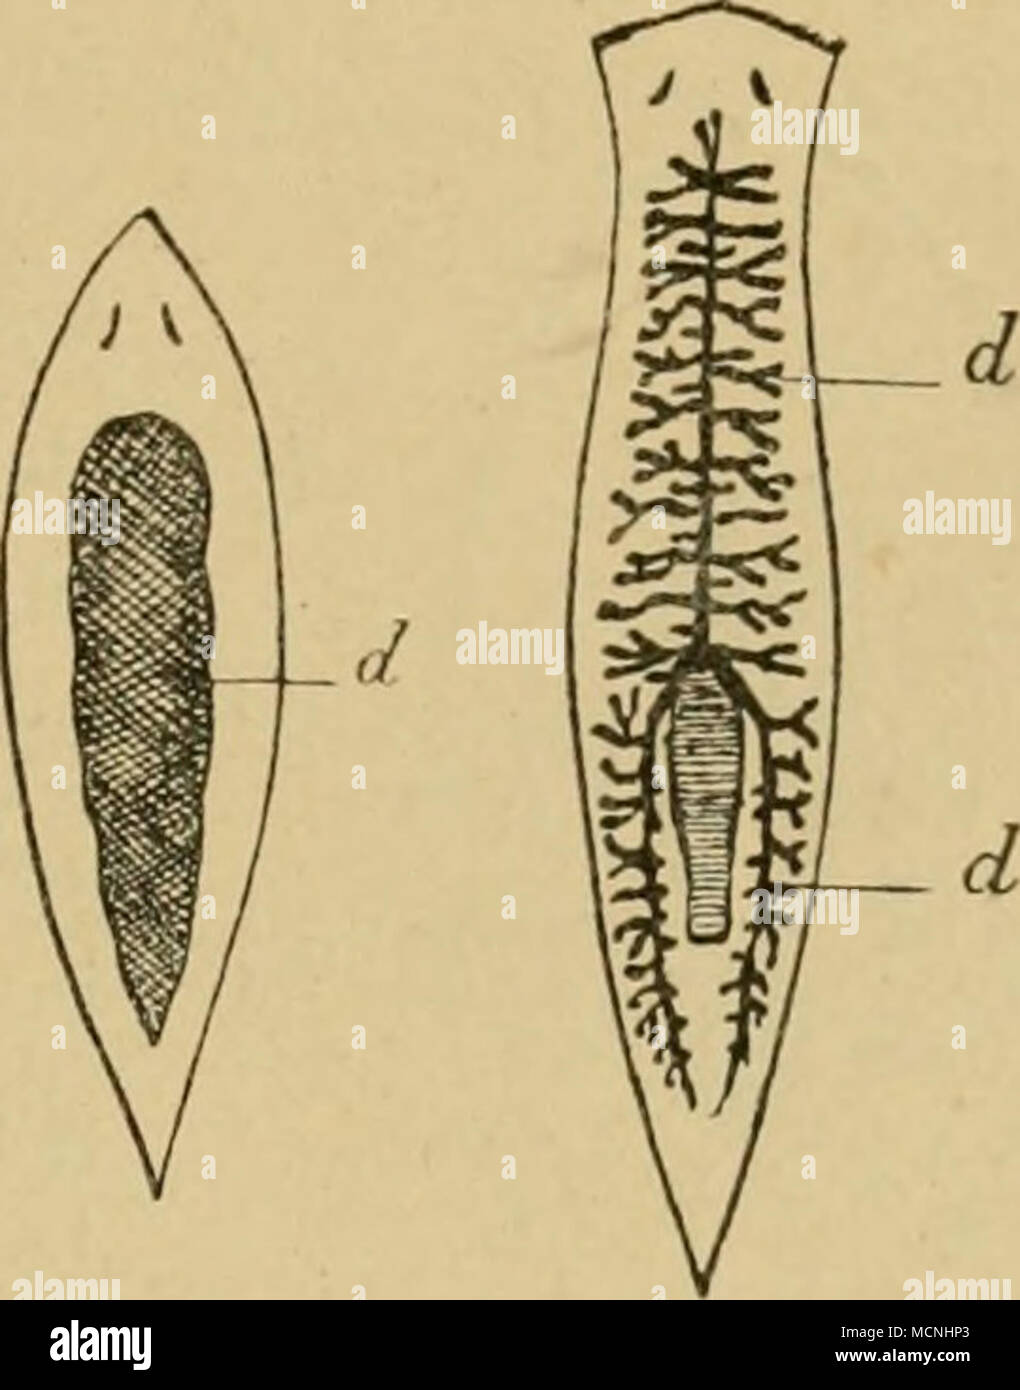 . A. Rhabdocoela. (Rhdbdocoelida, L. v. Graff.) Wenn man einen zu dieser Gruppe zählenden Strudelwurm seiner augenfälligsten Beschaffenheit nach skizzieren soll, so kann das etwa wie folgt geschehen. Ein solches Tier besitzt einen schlauchförmigen Körper und einen in diesen eingeschlossenen Behälter (Darm) für Aufnahme und Verdauung der Nahrung. Die Mundöffhung ist je nach den einzelnen Gattungen bauchständig (Mesostoma) oder terminal (Vortex). Alle Rhabdocöliden sind afterlos. Zwischen Darm und Leibesschlauch liegen die Fort- pflanzungsorgane , welche einen zwitterartigen Charakter tragen. Di Stock Photo